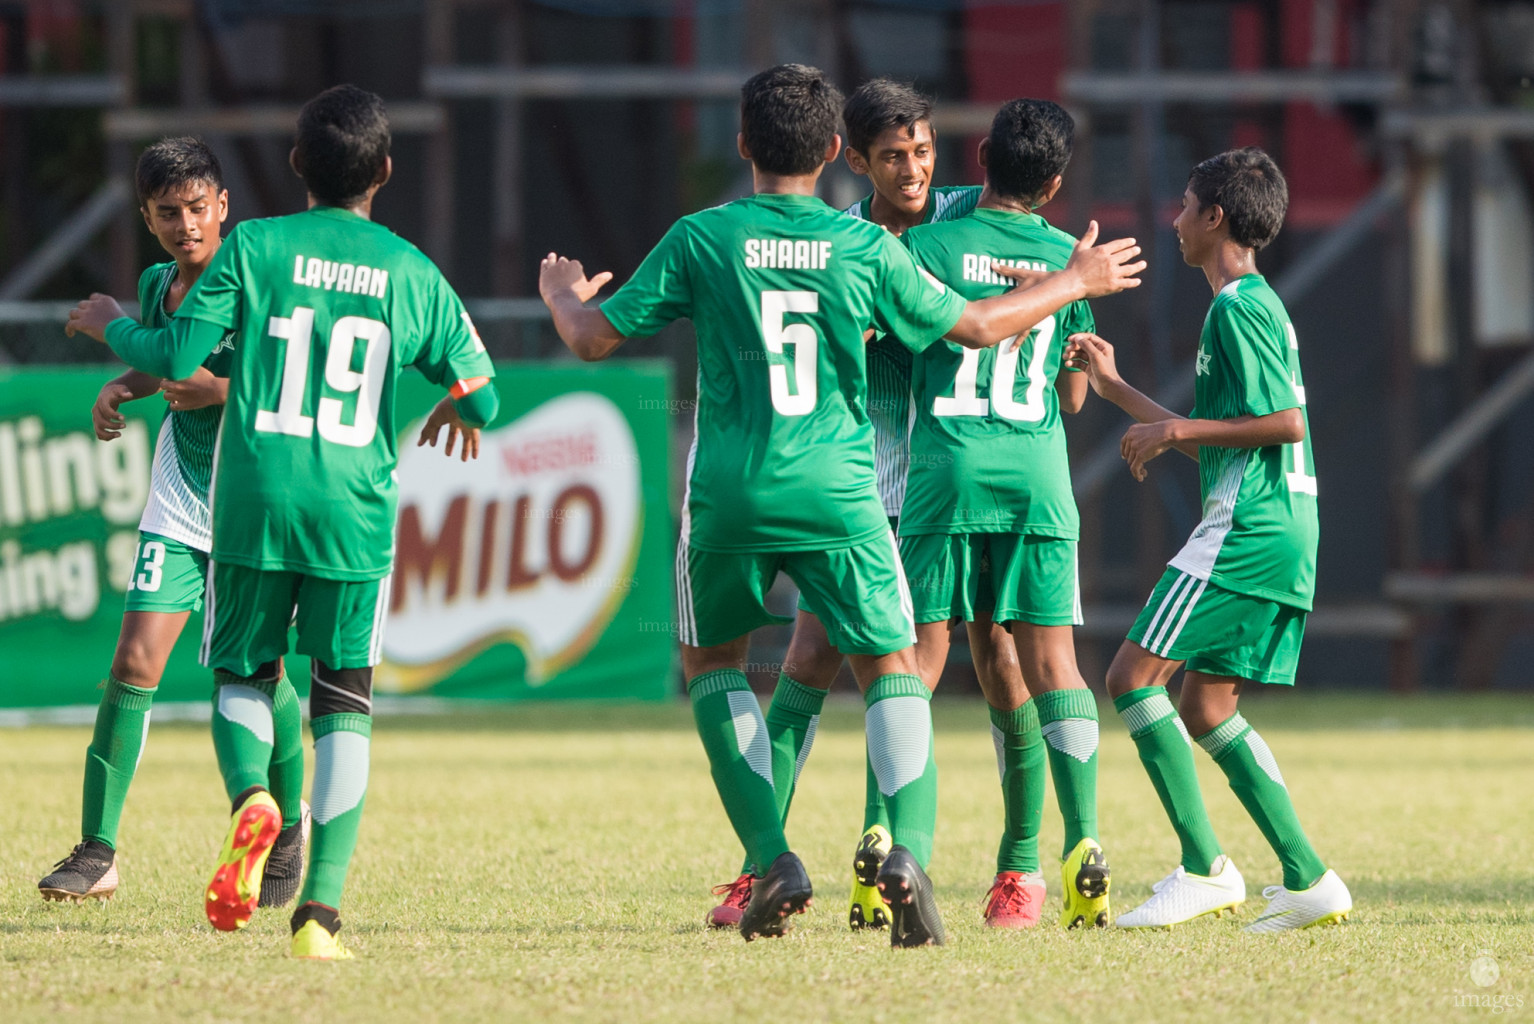 Aminiya School vs Ahmadhiyya School in Mamen Inter-School Football Tournament 2019 (U15) on 27th February 2019, Monday in Male' Maldives (Images.mv Photo: Suadh Abdul Sattar)